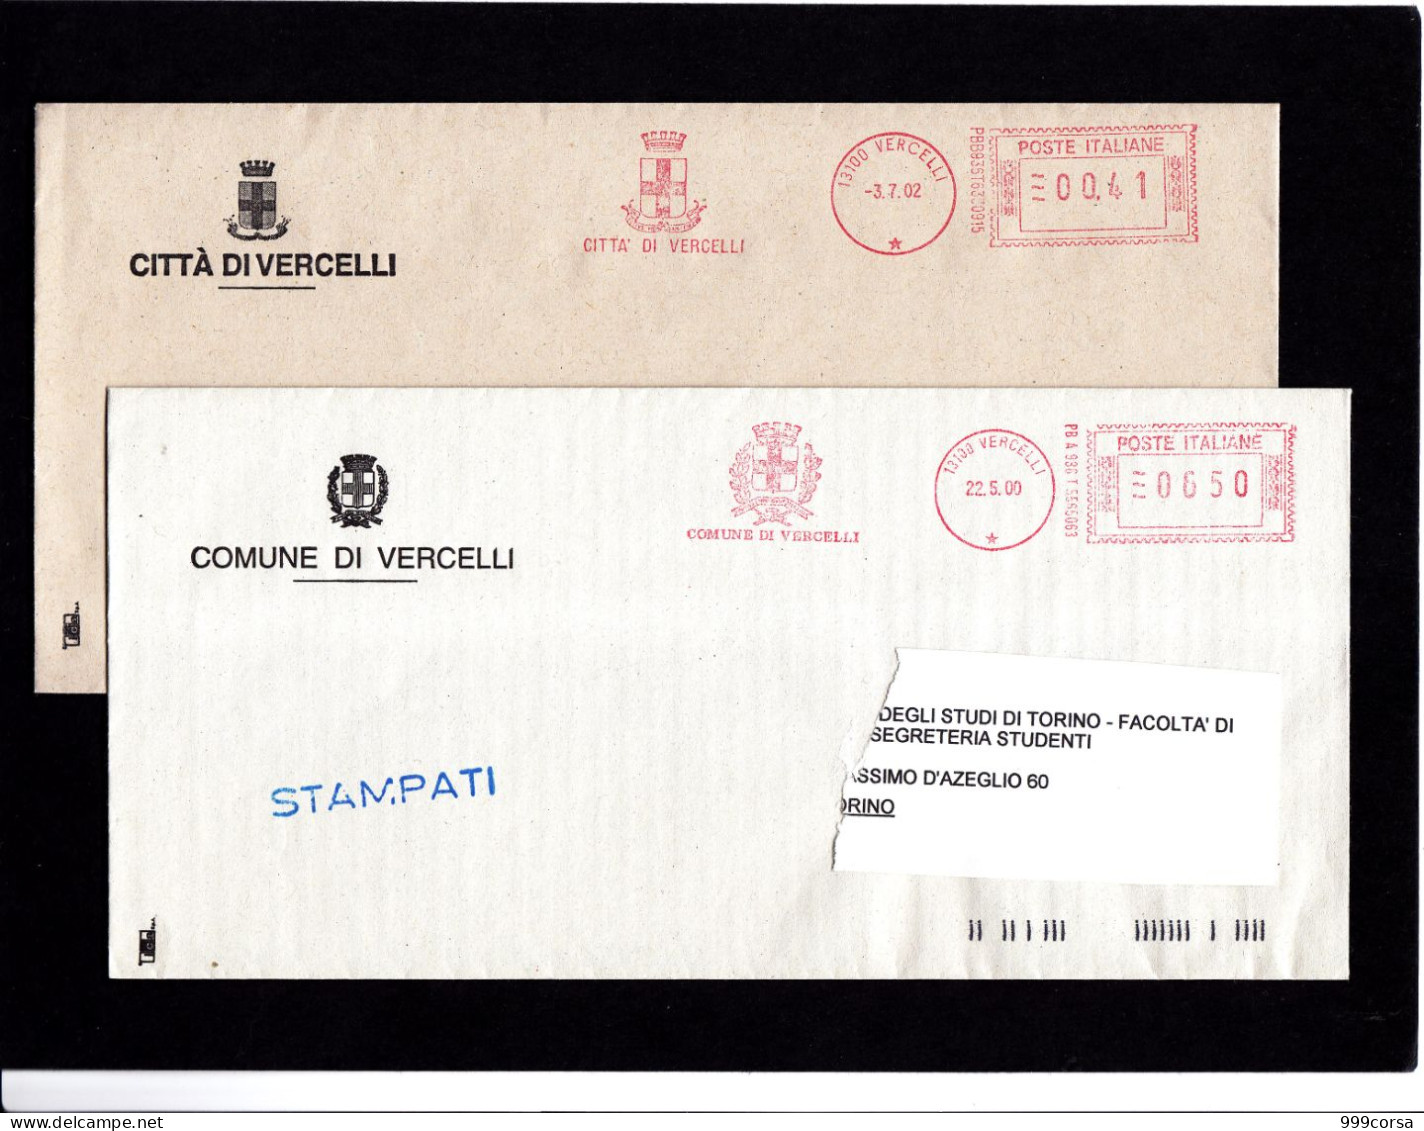 Stemmi, A.m., Comuni E Città,Valle D'Aosta Reg. Autonoma (b),Vercelli,Verona (1),Viadana (MN),Vinovo,ema,meter - Maschinenstempel (EMA)